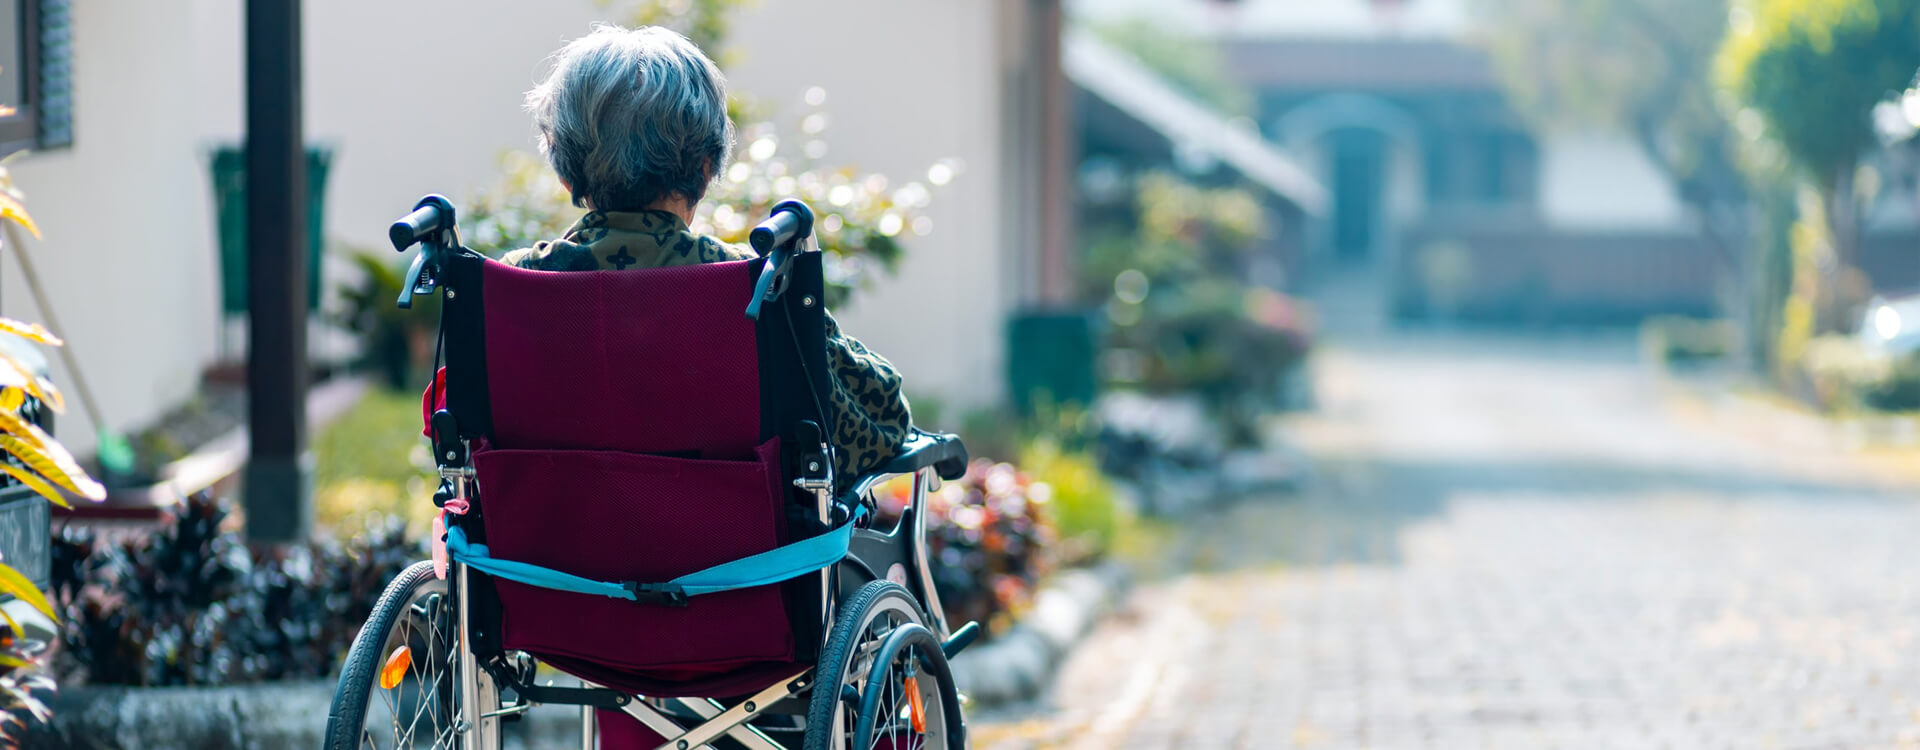 Ilustračný obrázok Alzheimerova choroba: staršia pani sedí v kolečkovom kresle a pozoruje ulicu, pohľad zozadu